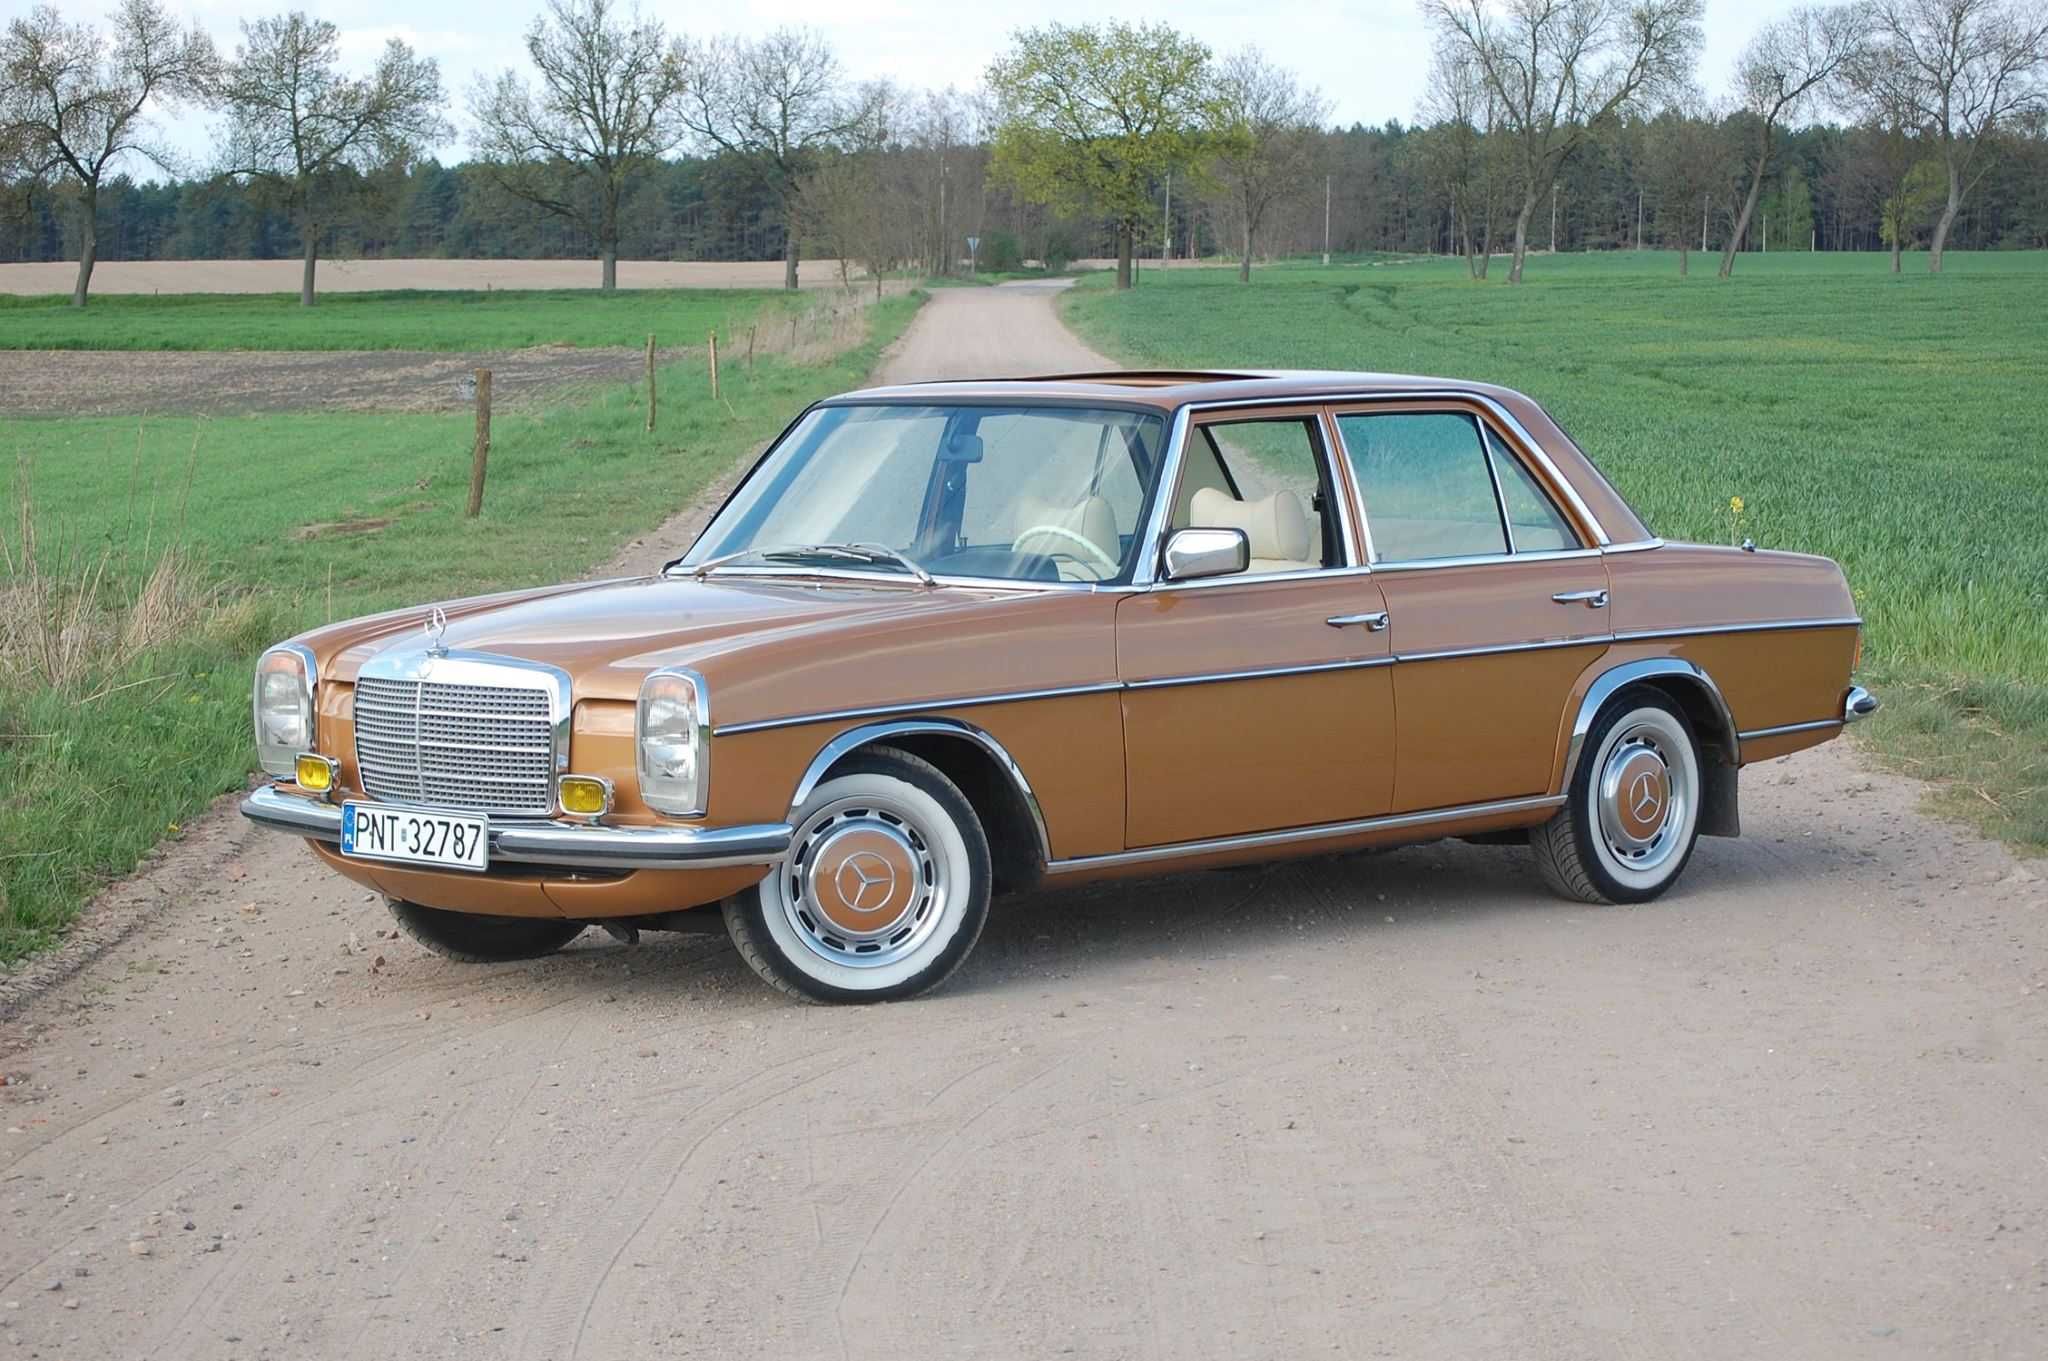 Złoty Mercedes W115 do ślubu :)